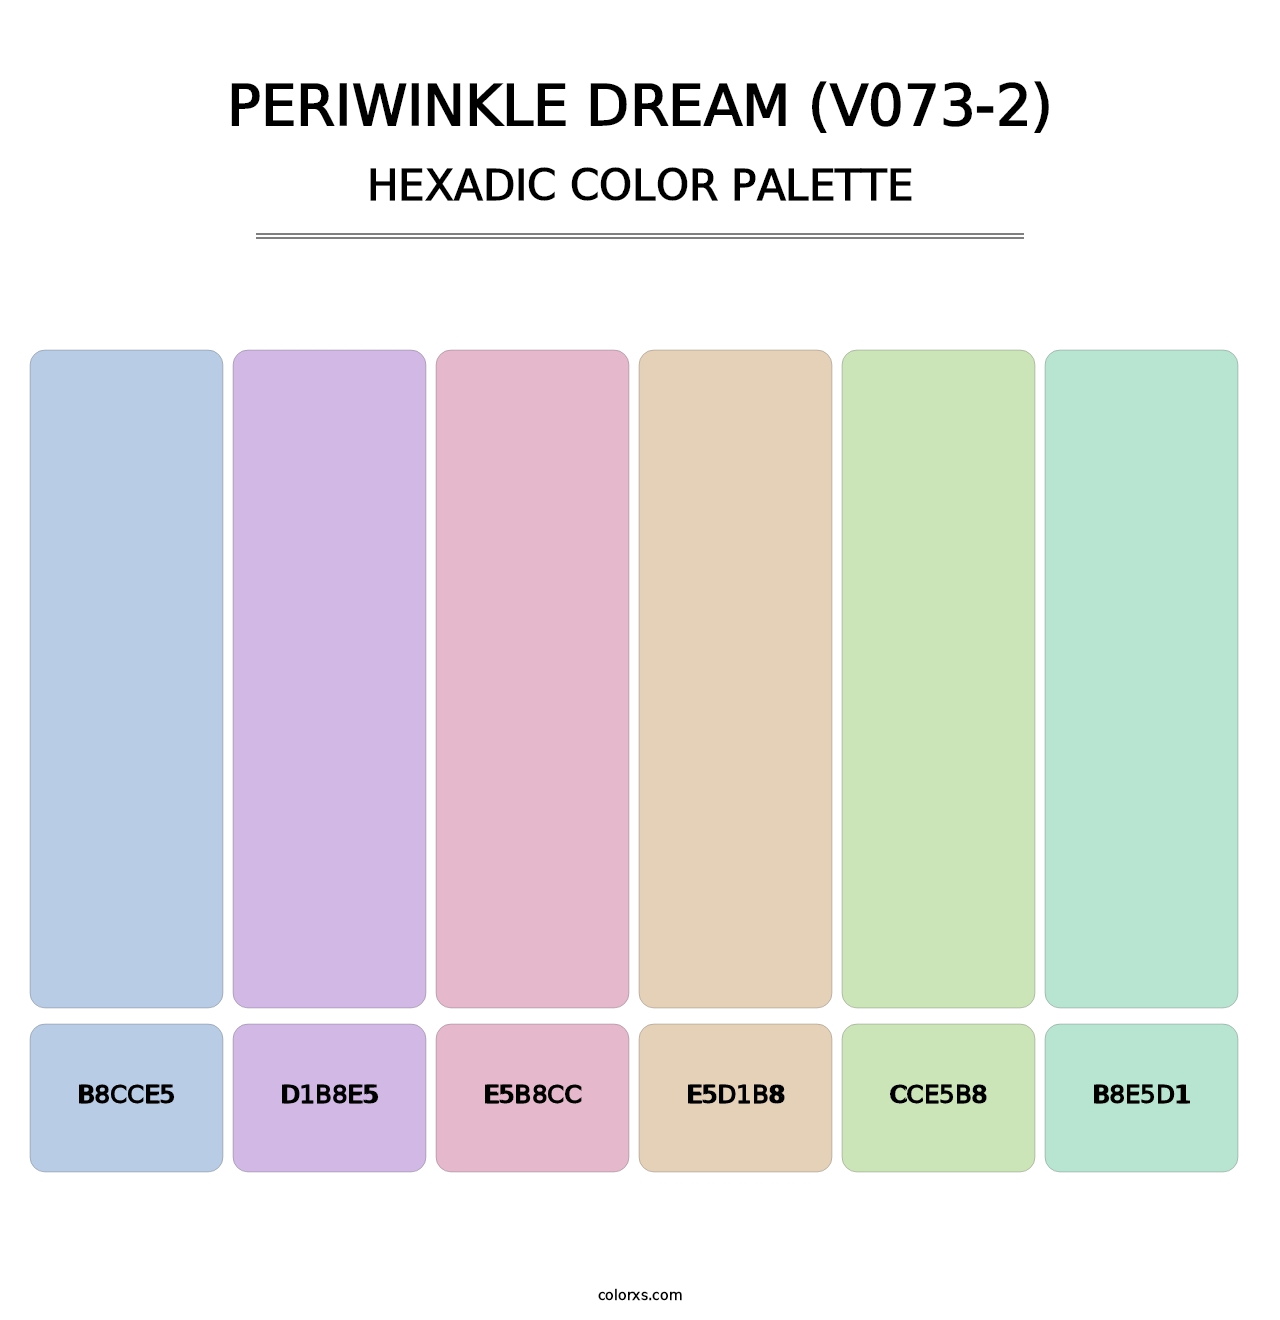 Periwinkle Dream (V073-2) - Hexadic Color Palette